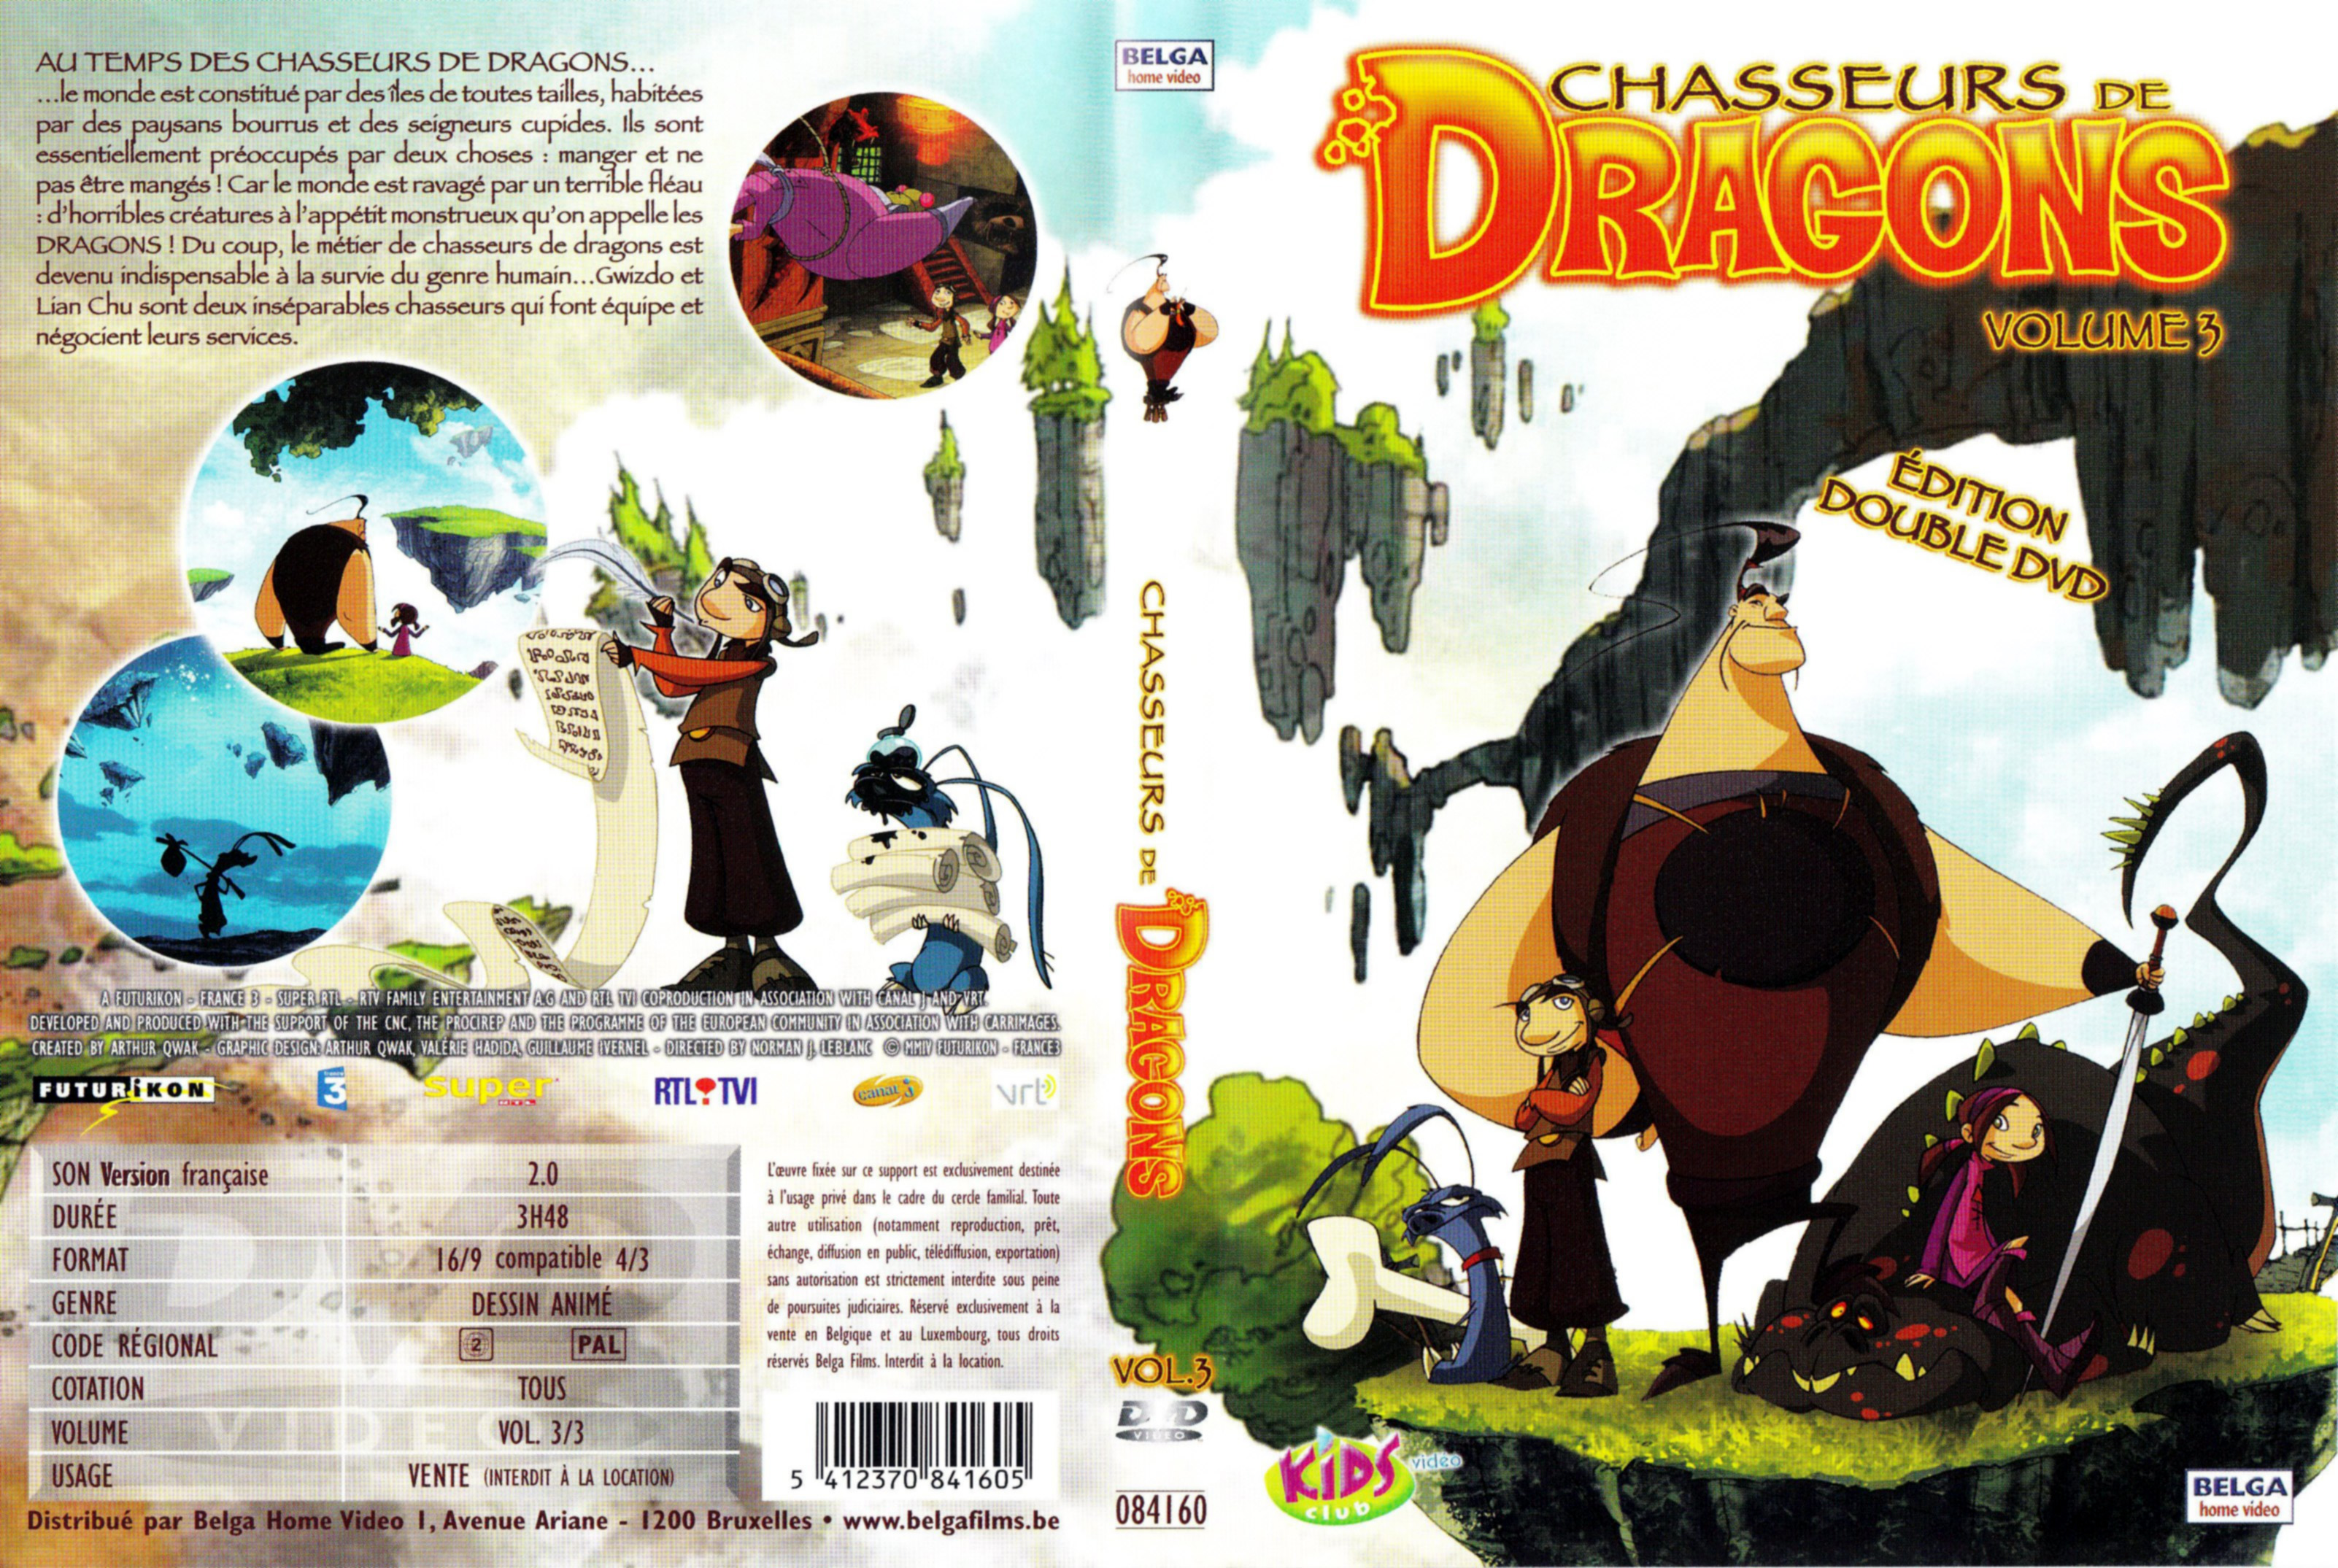 Jaquette DVD Chasseurs de dragons vol 3